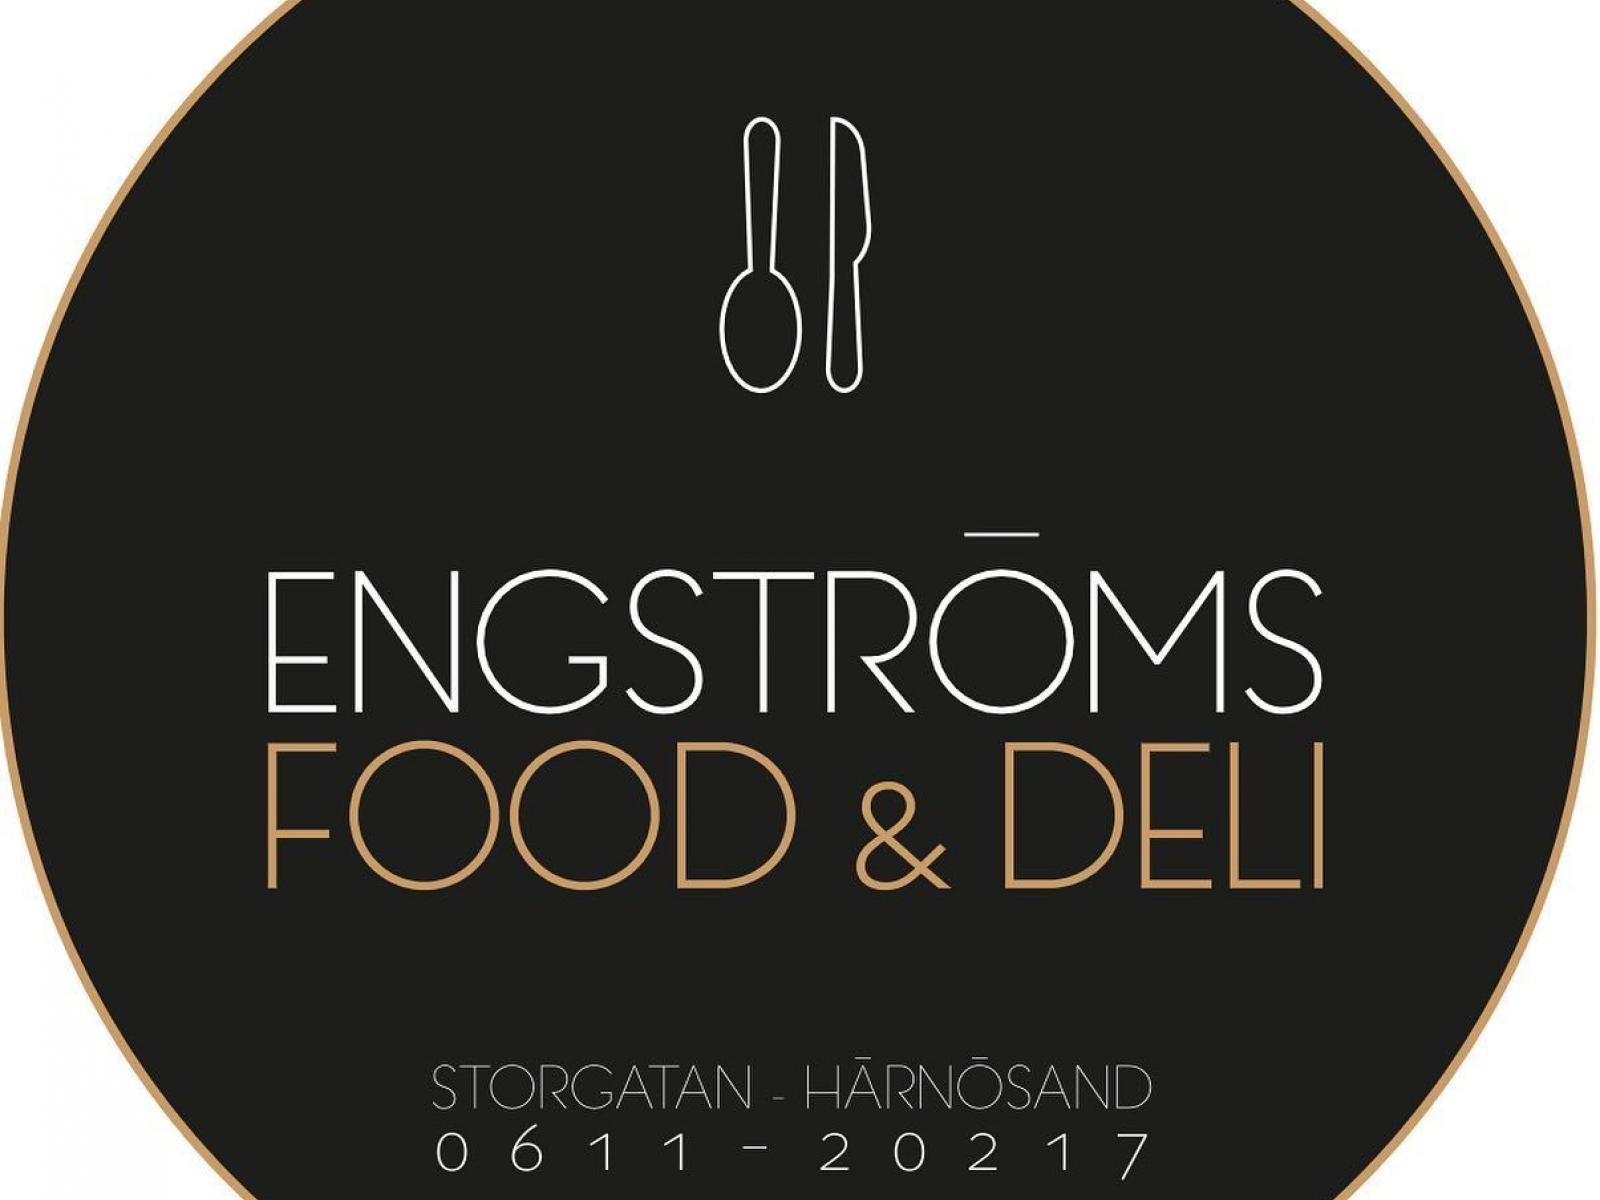 Engströms Food & Deli